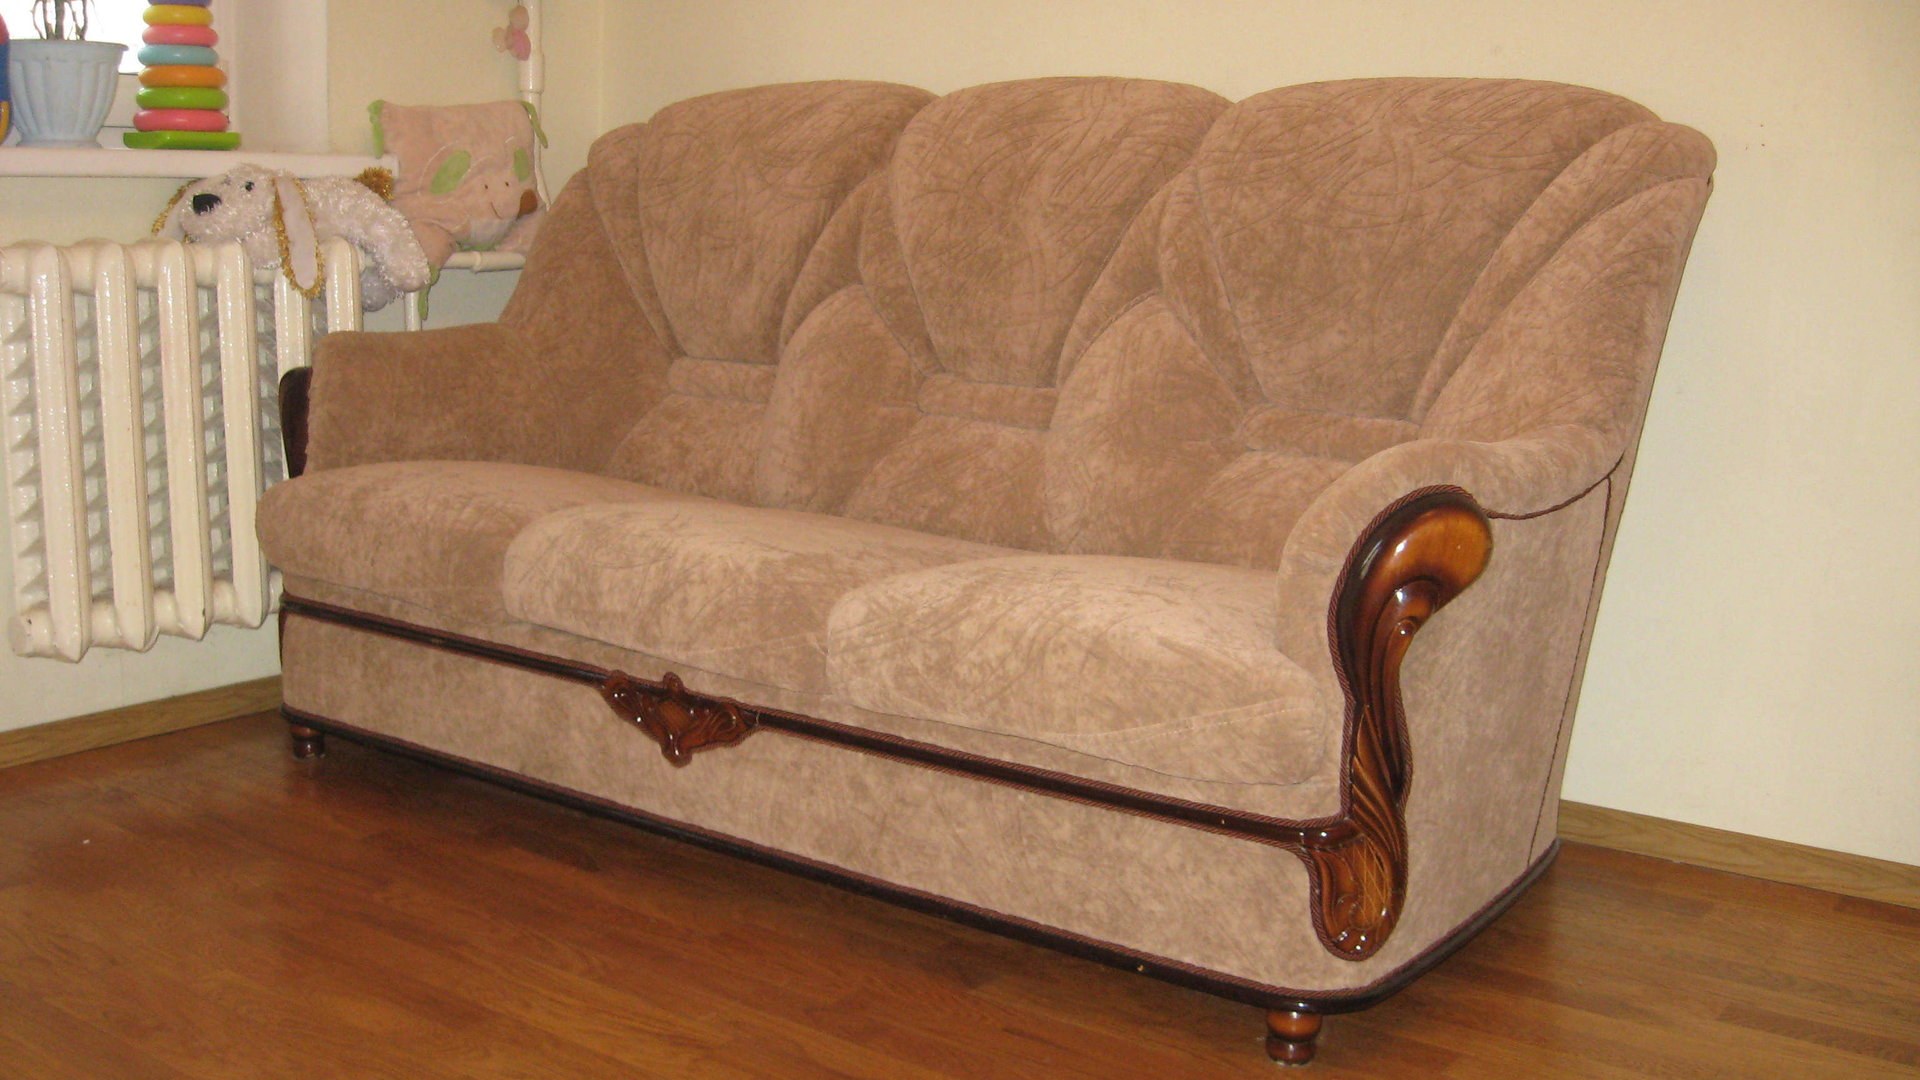 Авито москва куплю диван б у. Бэушный диван. Мягкая мебель б/у. Старые диваны и кресла. Диван в хорошем состоянии.